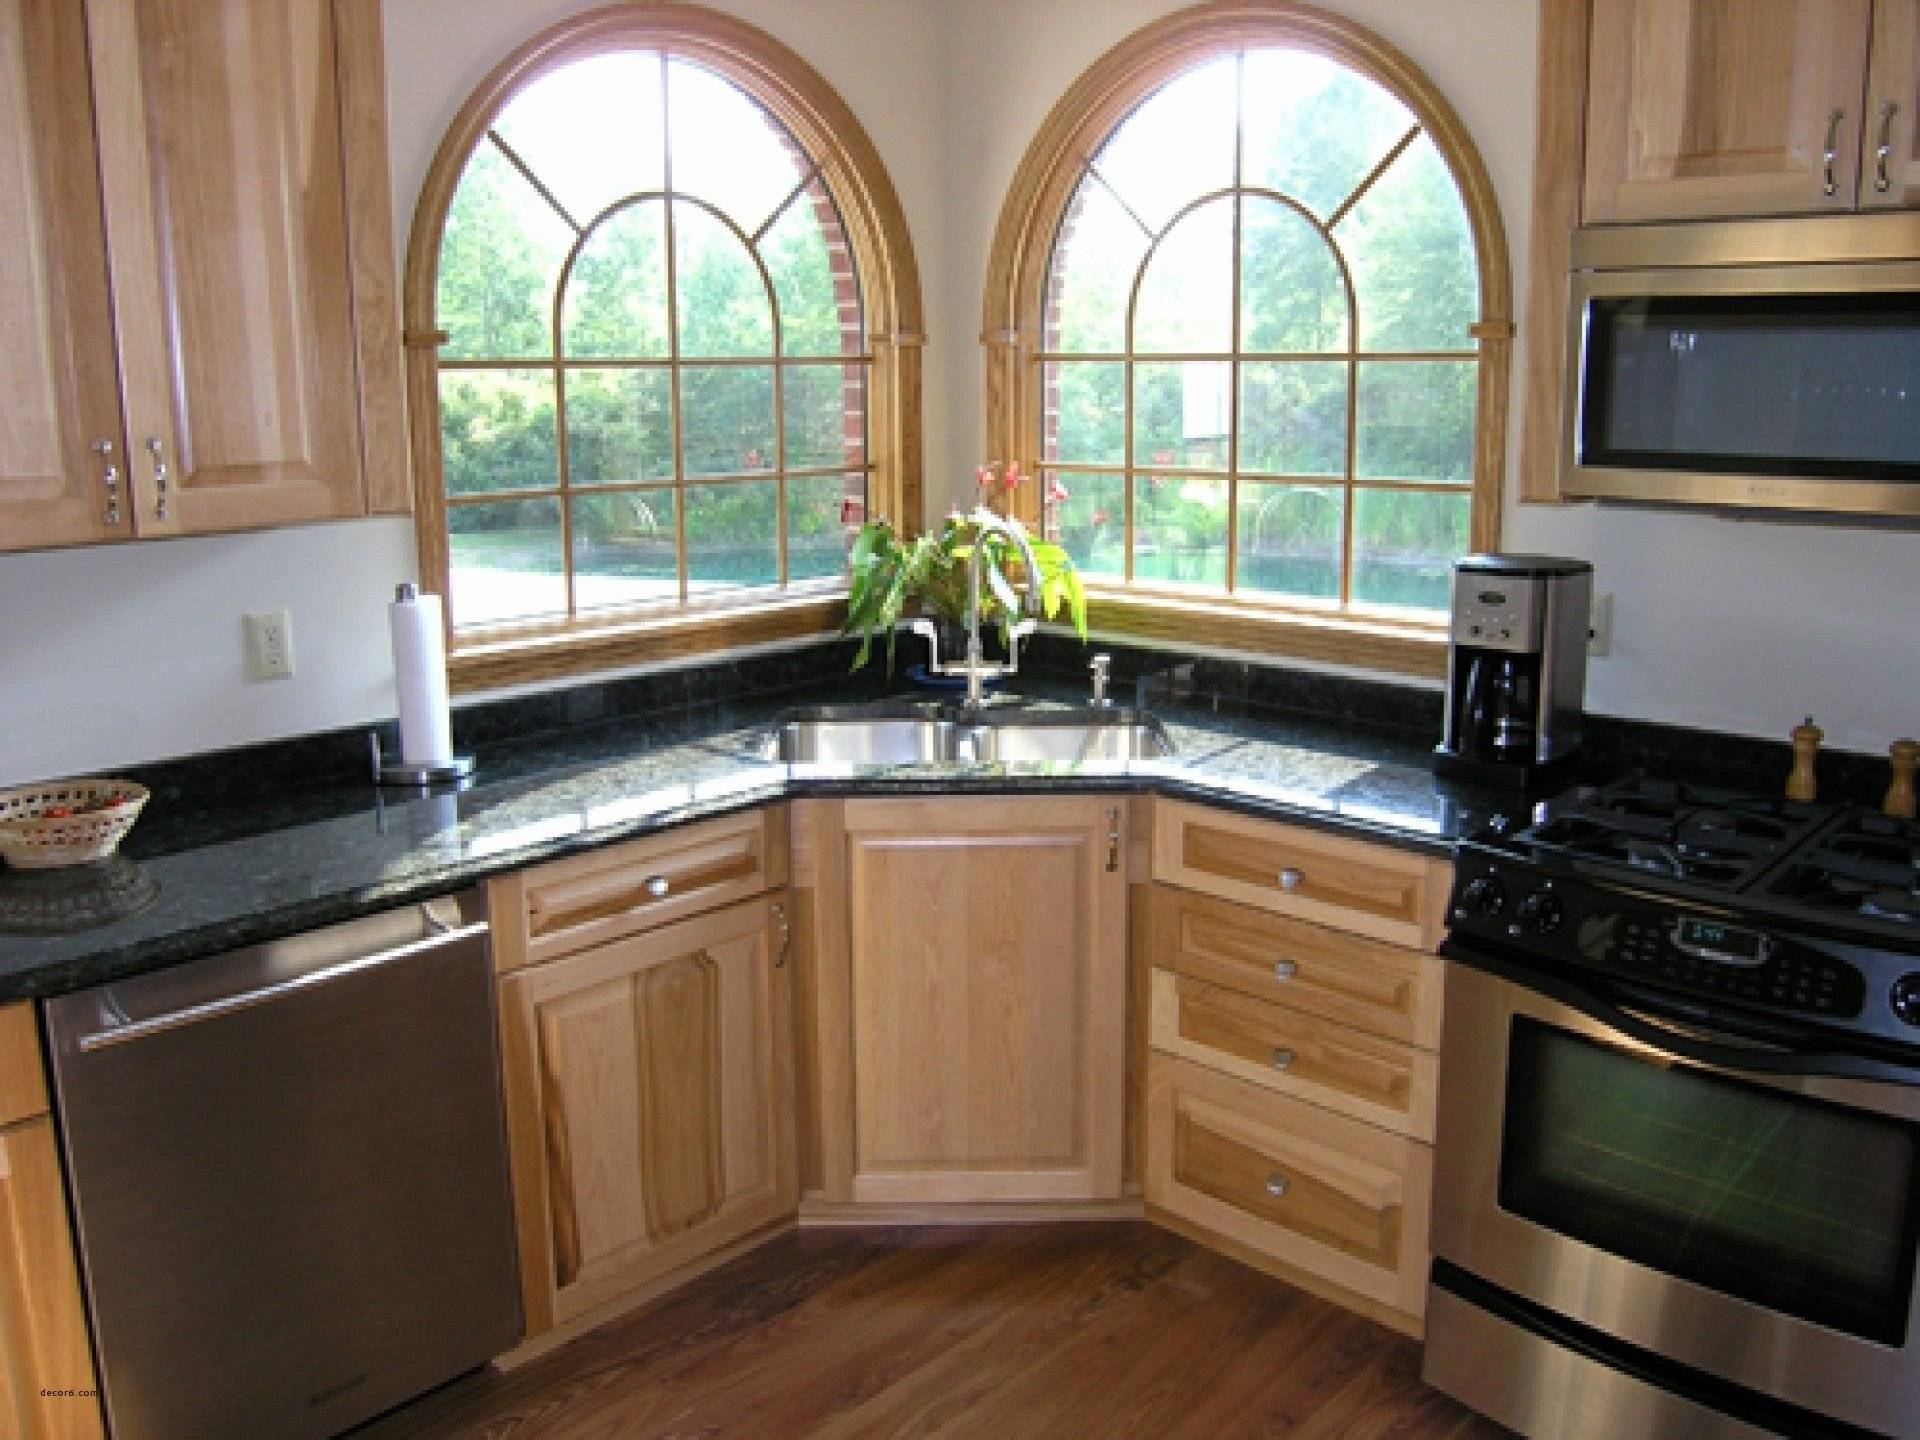 Угловая кухня с окном - варианты оформления дизайна и интеьера
угловая кухня с окном - варианты оформления дизайна и интеьера